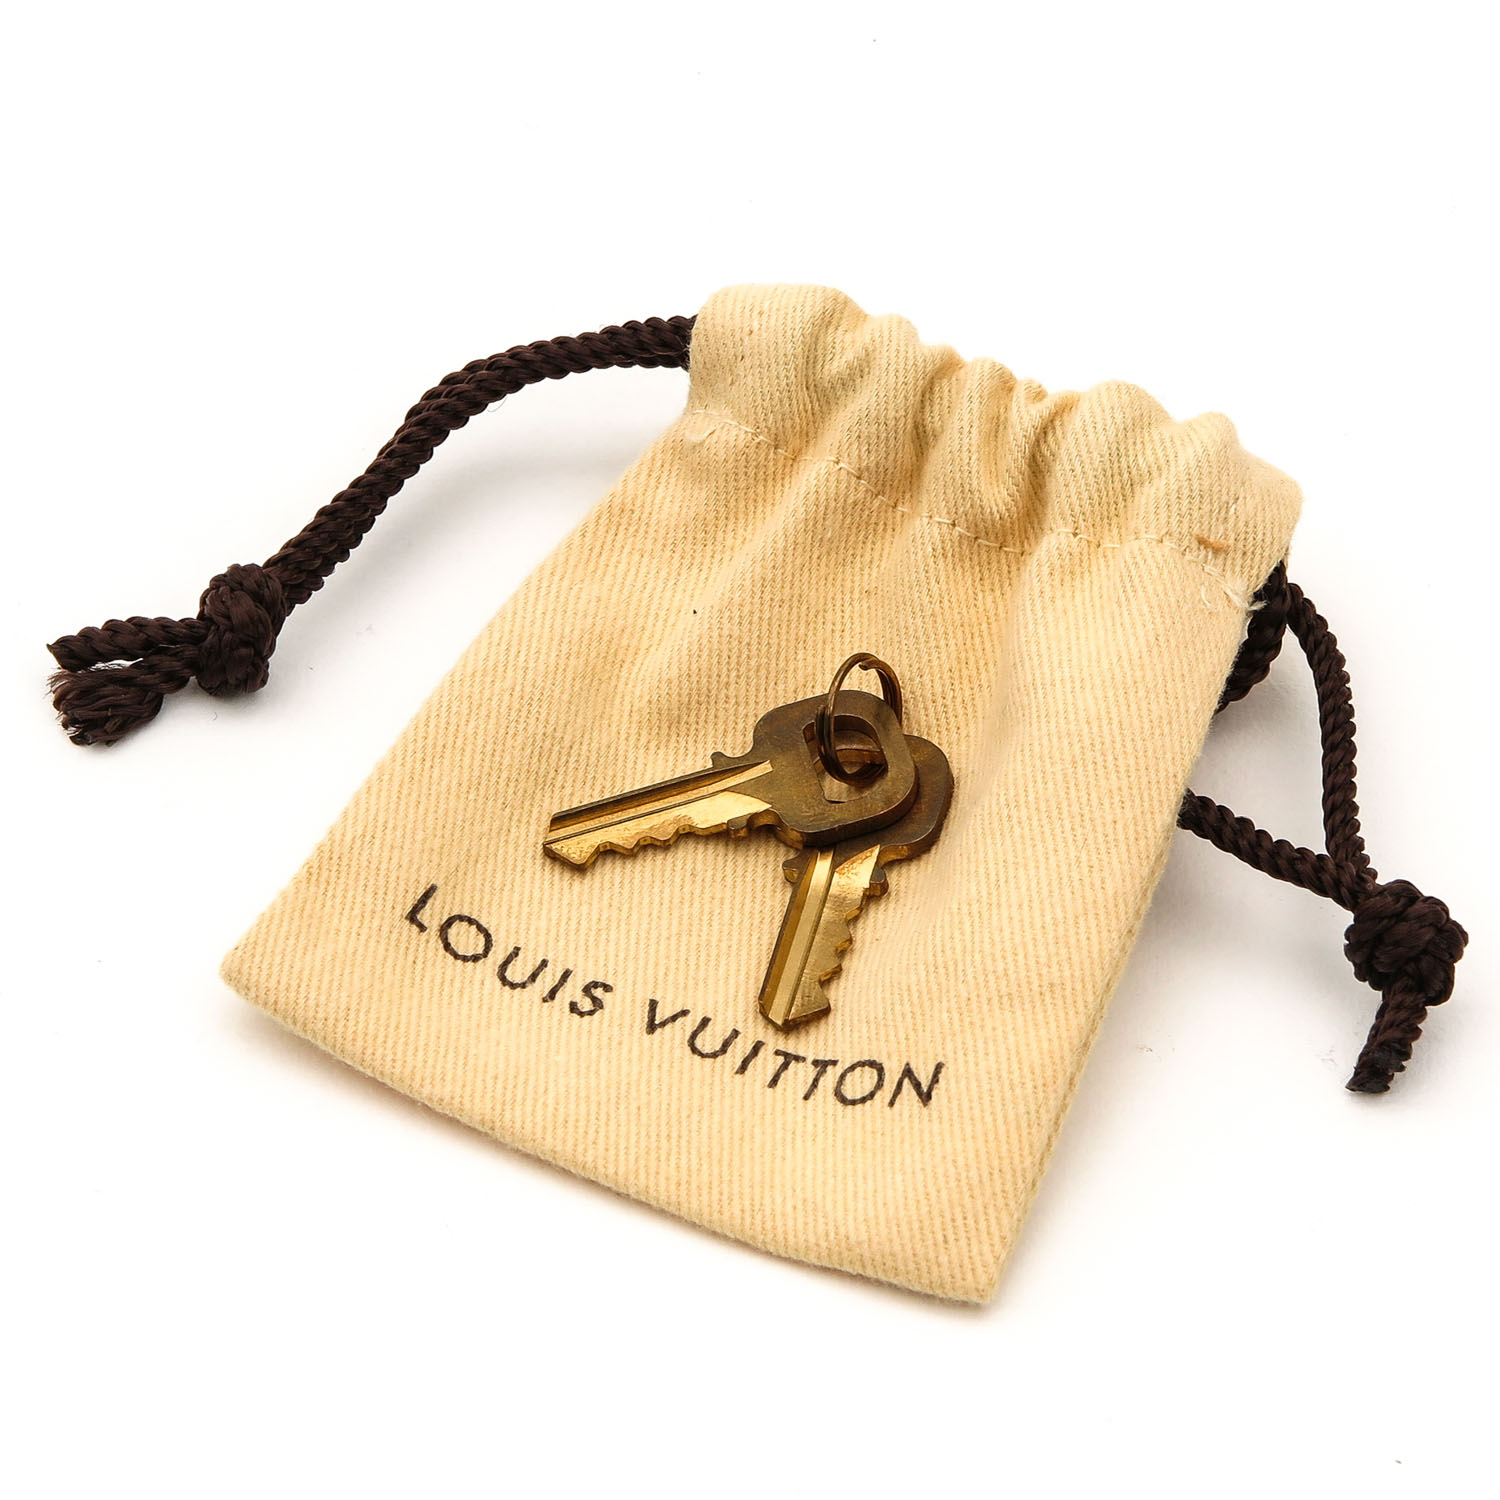 A Louis Vuitton Handbag - Image 7 of 8